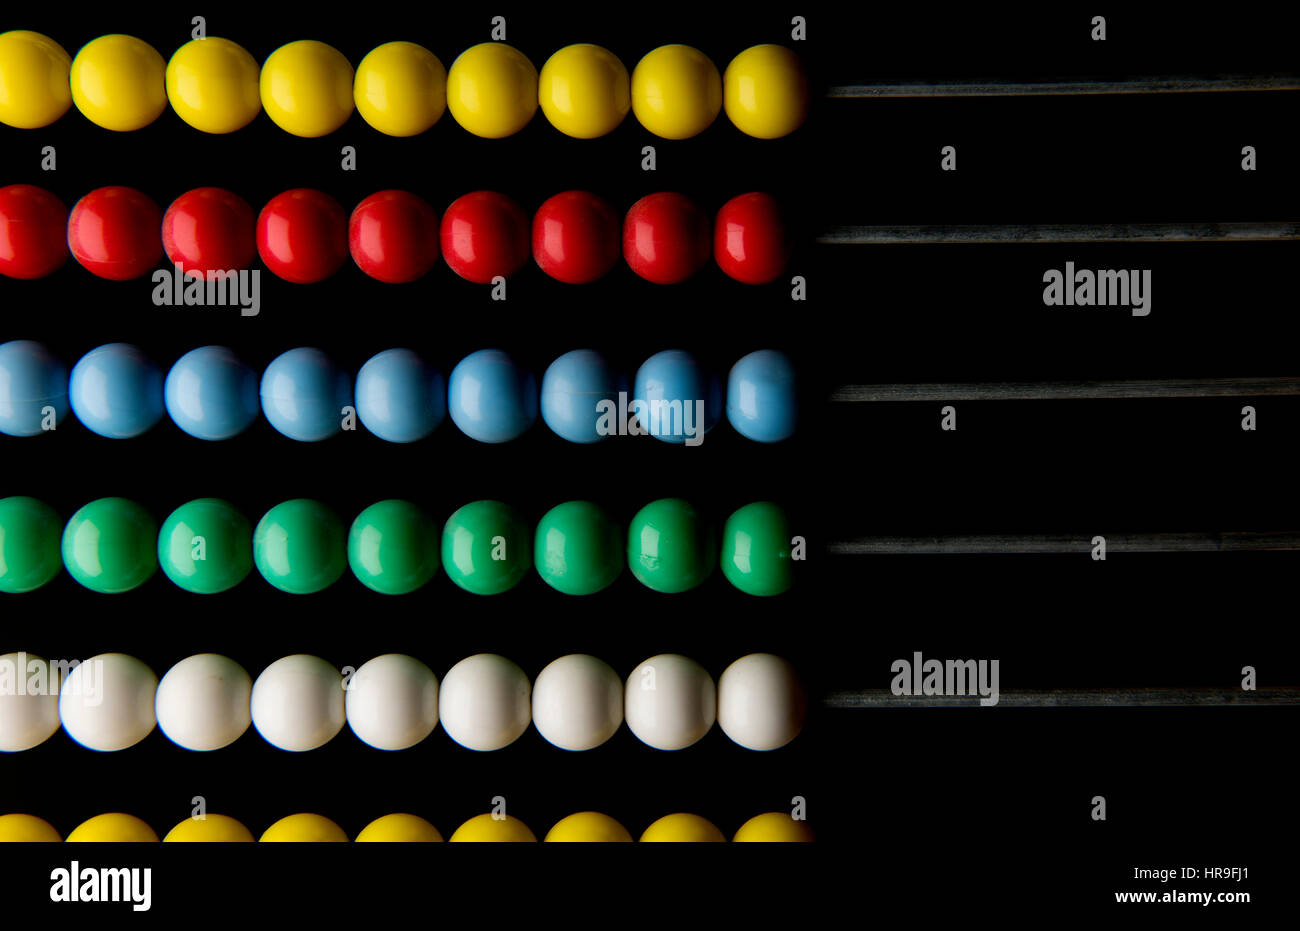 Abacus-Perlen in einem Frame. Februar 2017 farbige Abacus Perlen für die Berechnung besonders in Nahost Trhe verwendet. Stockfoto